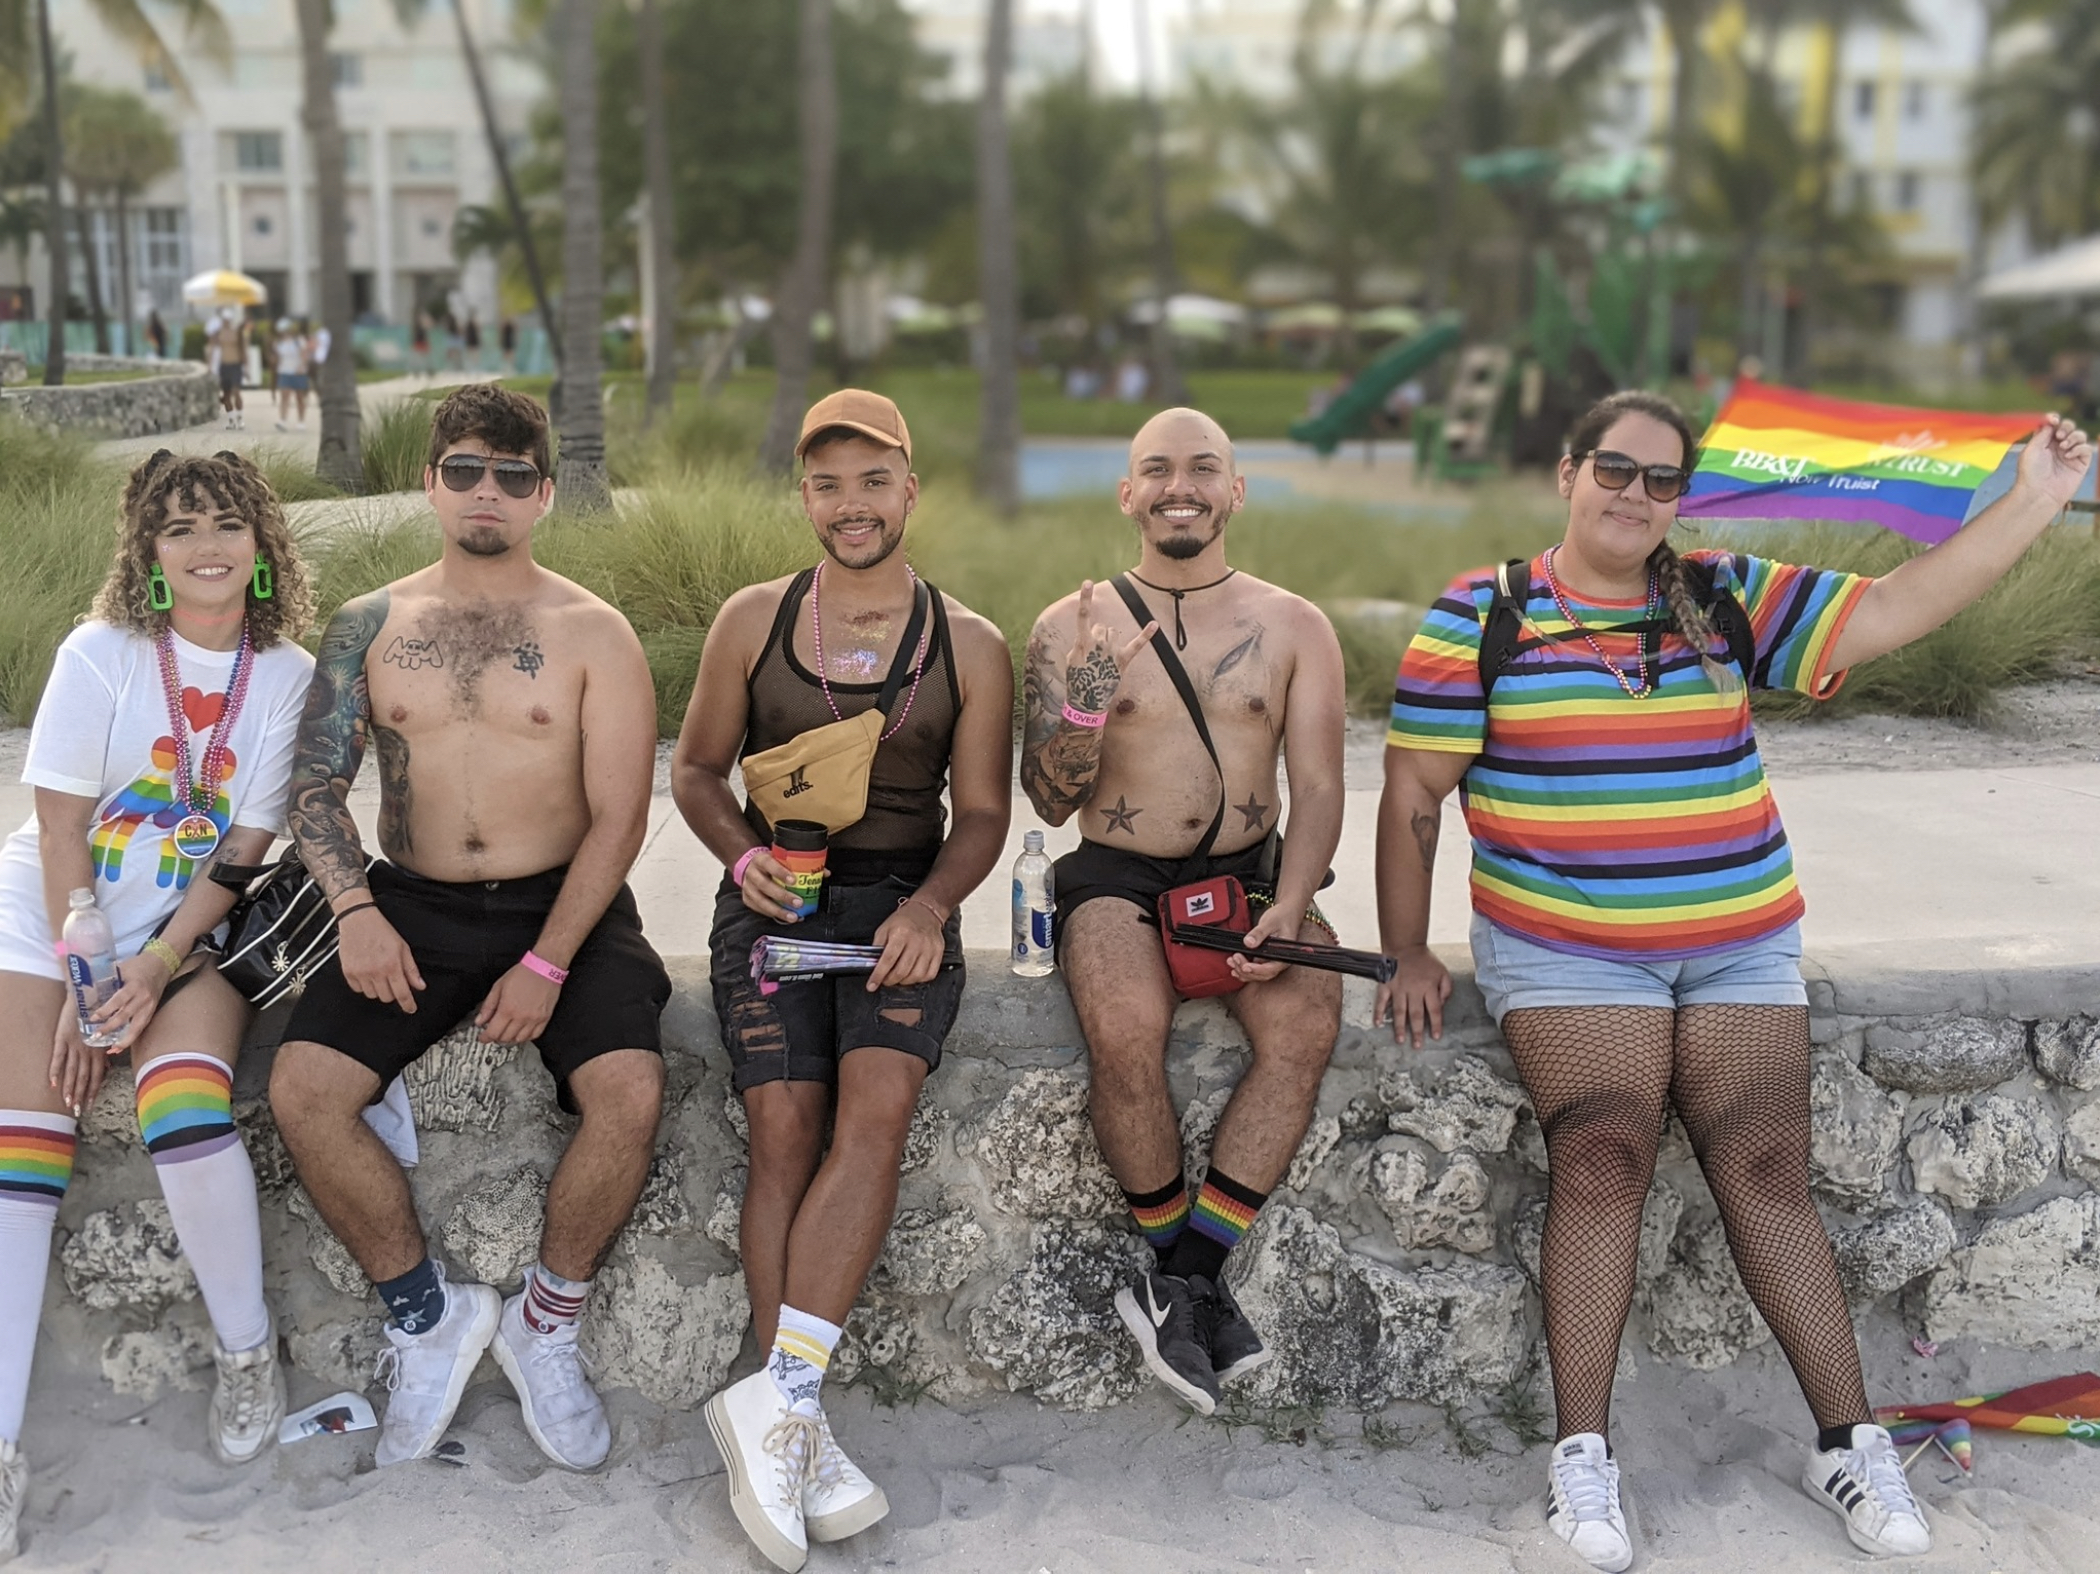 Esta pequeña ciudad dentro de los límites de Fort Lauderdale es un oasis LGBT+. (Stonewall Pride Parade)